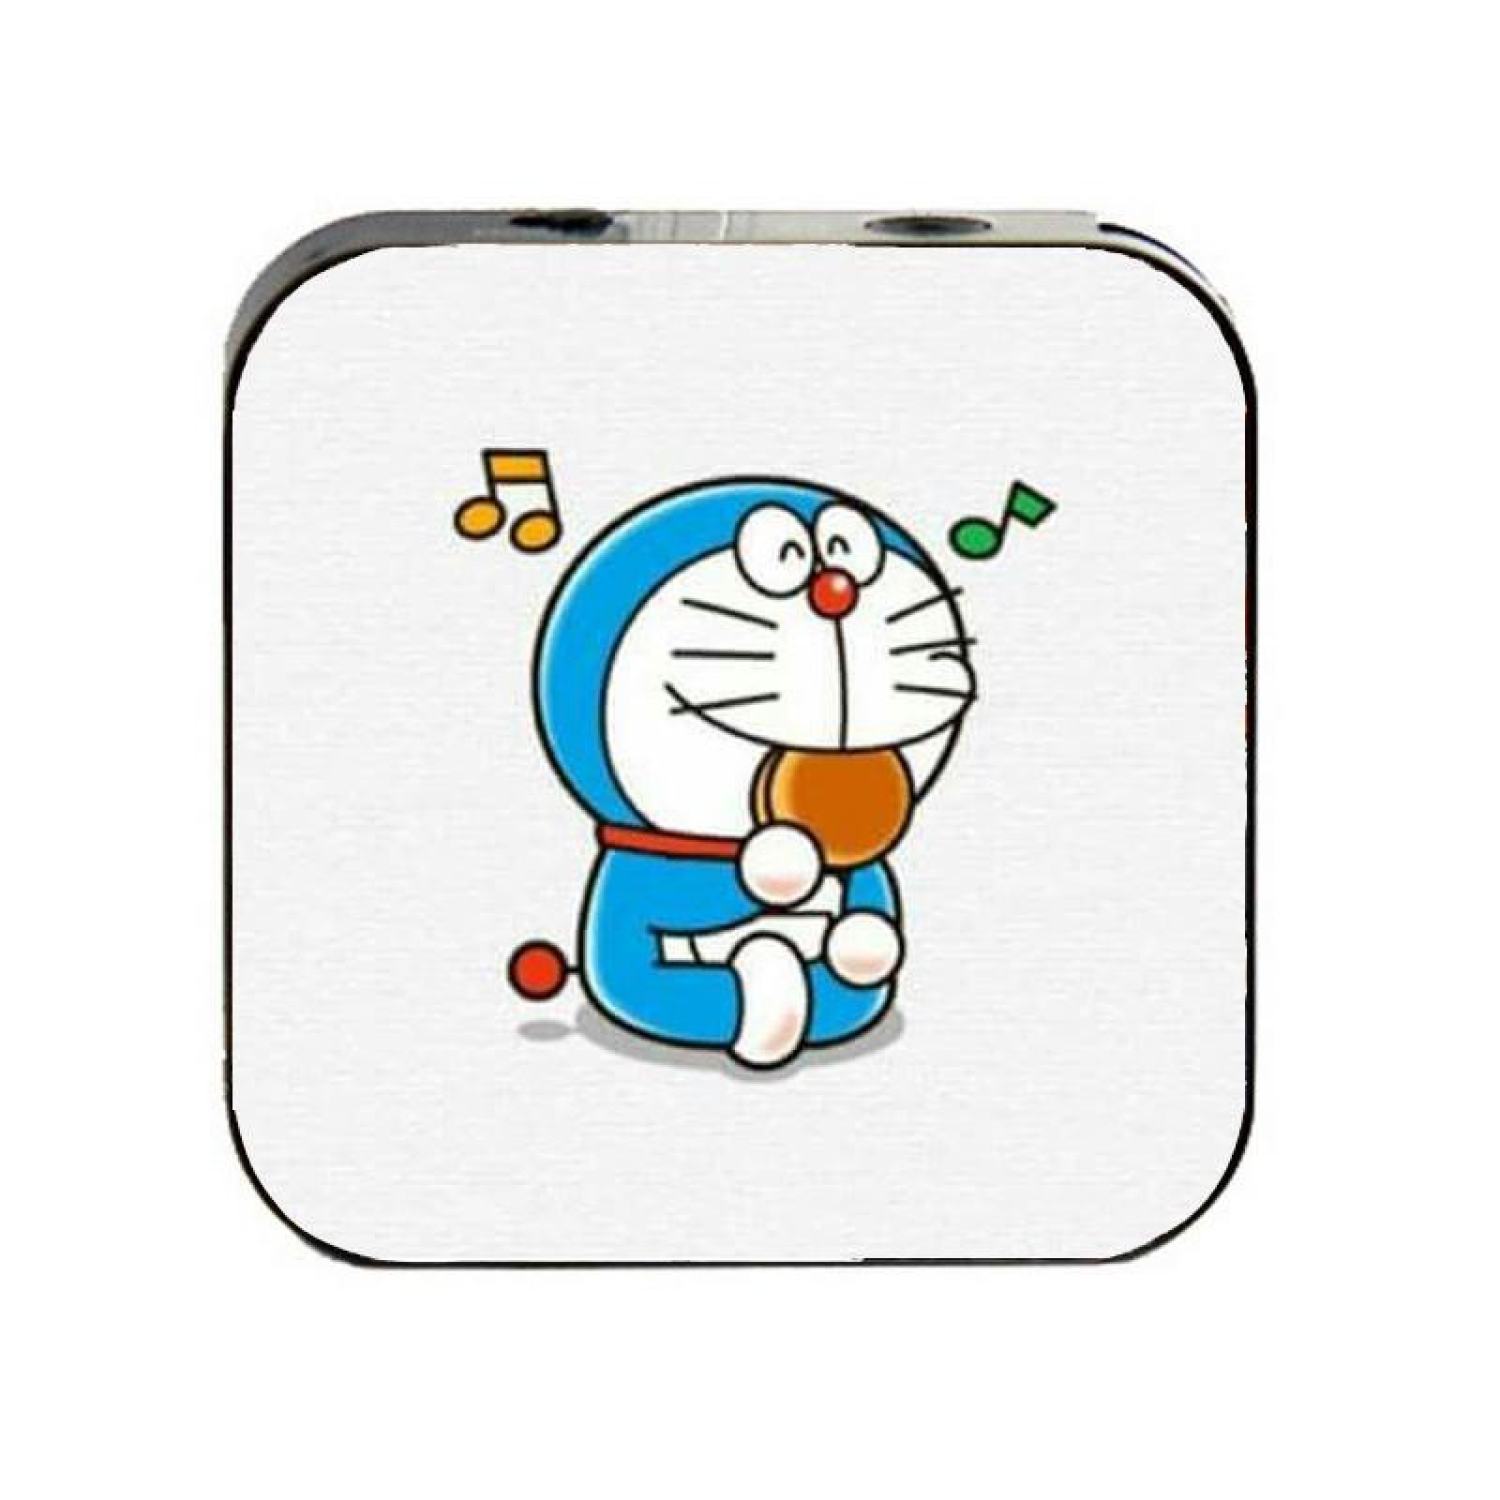 Máy nghe nhạc Doraemon làm say lòng các fan của chú mèo máy thiên tài. Xem ngay hình ảnh liên quan để được chiêm ngưỡng sự điều khiển đơn giản, kiểu dáng đẹp mắt cùng âm thanh chất lượng cao của máy.